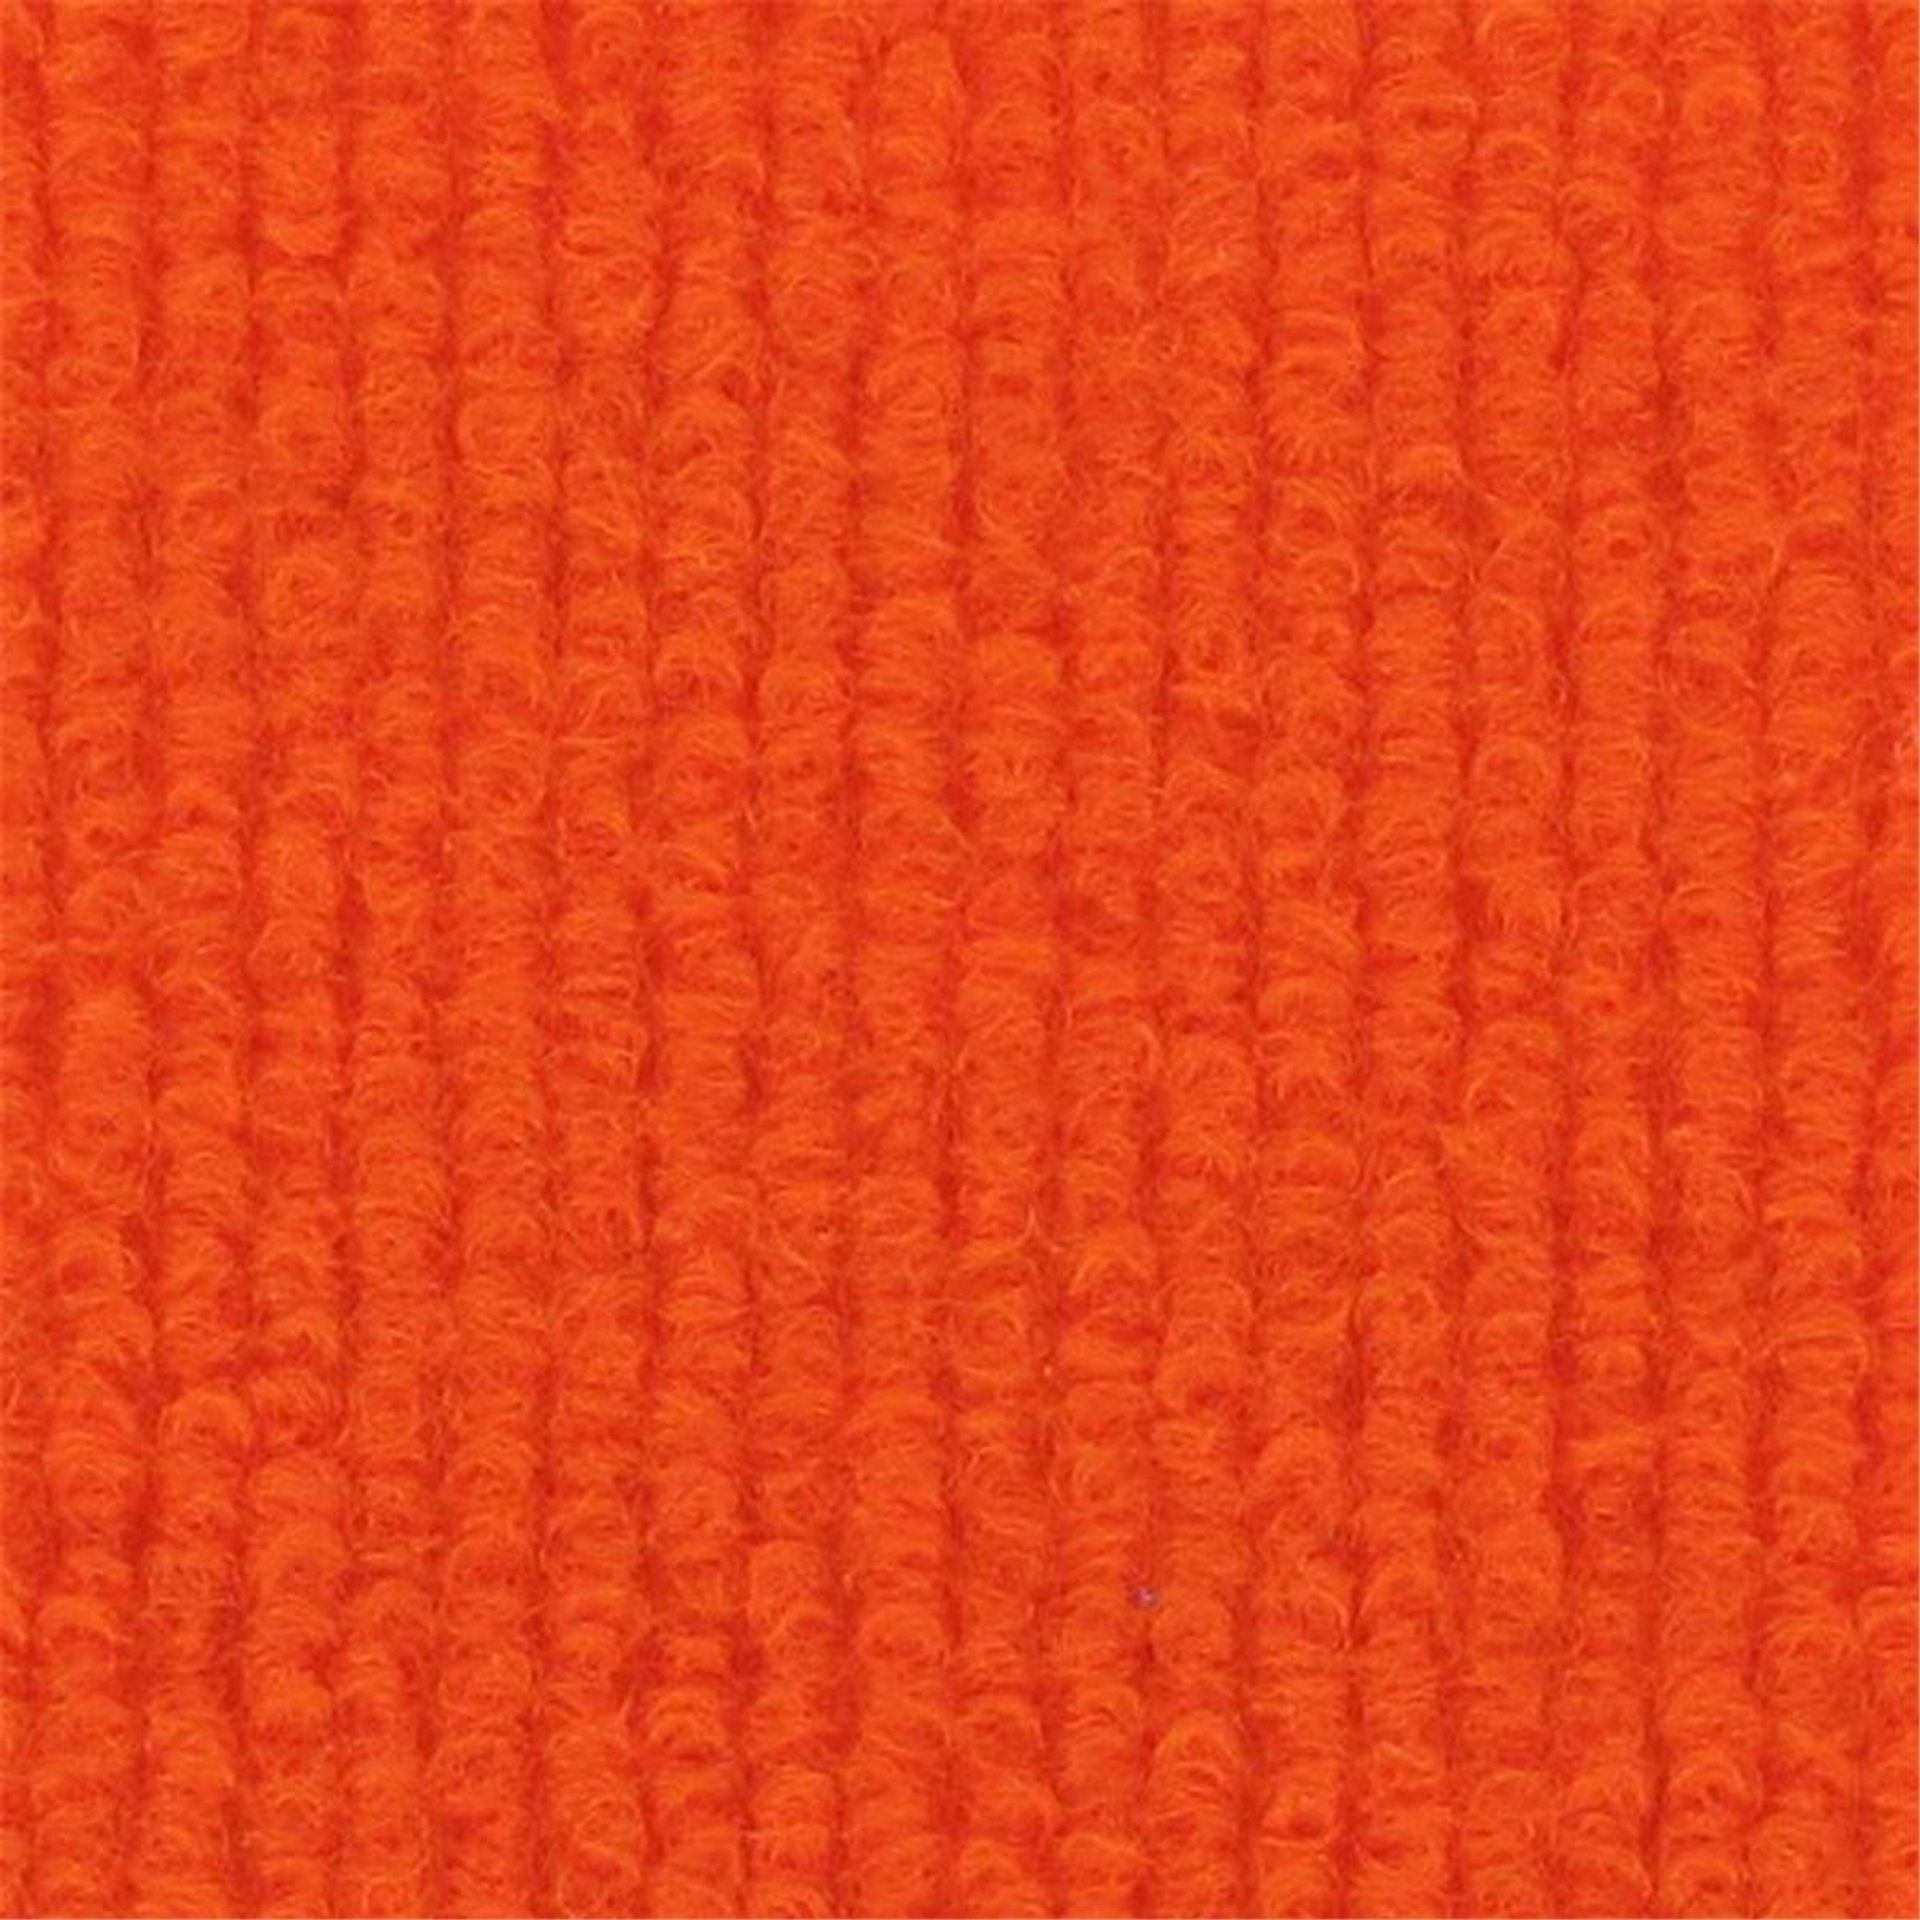 Messeboden Rips-Nadelvlies EXPOLINE Orange 0007 100 qm ohne Schutzfolie - Rollenbreite 200 cm